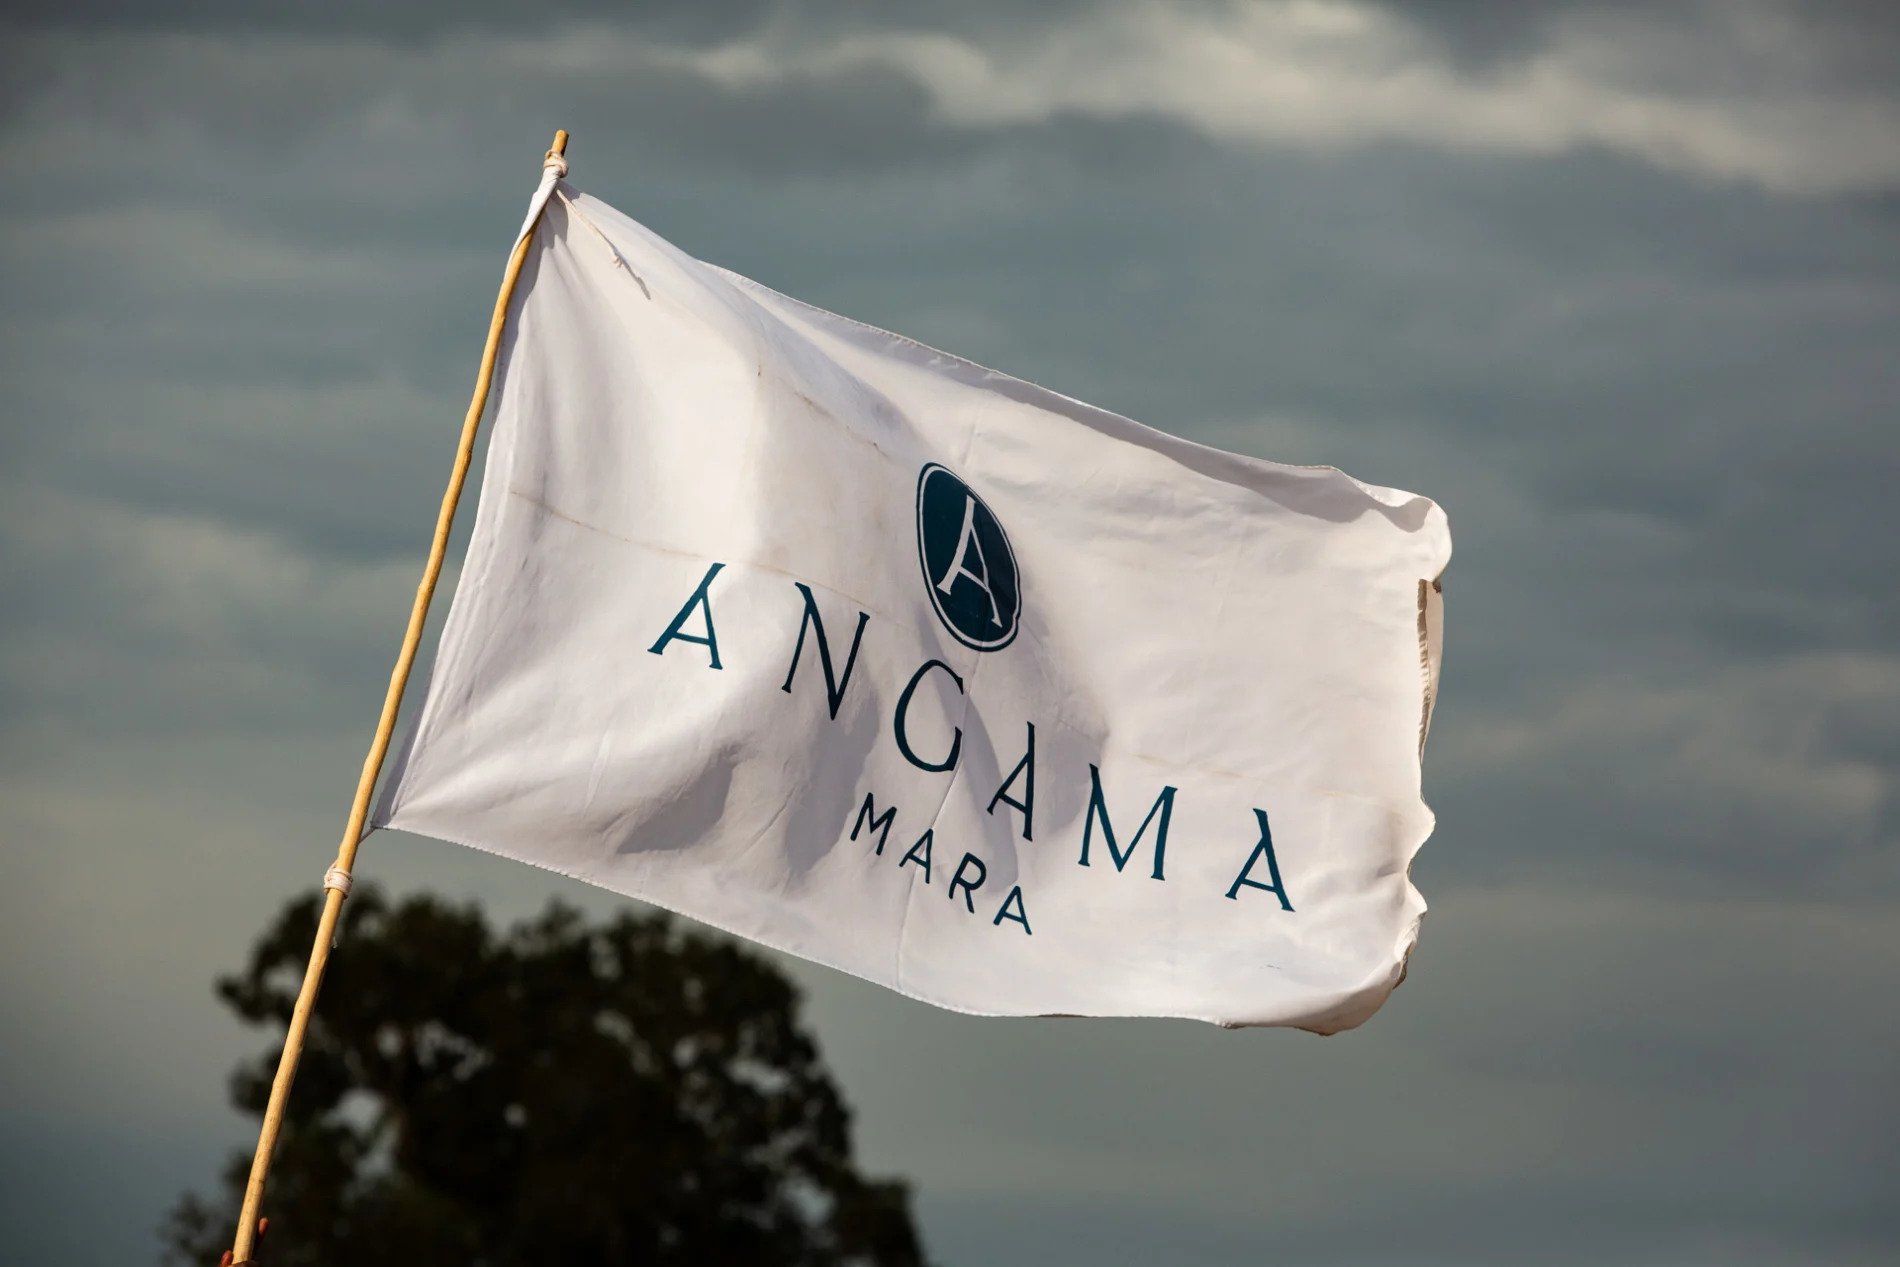 The Angama flag